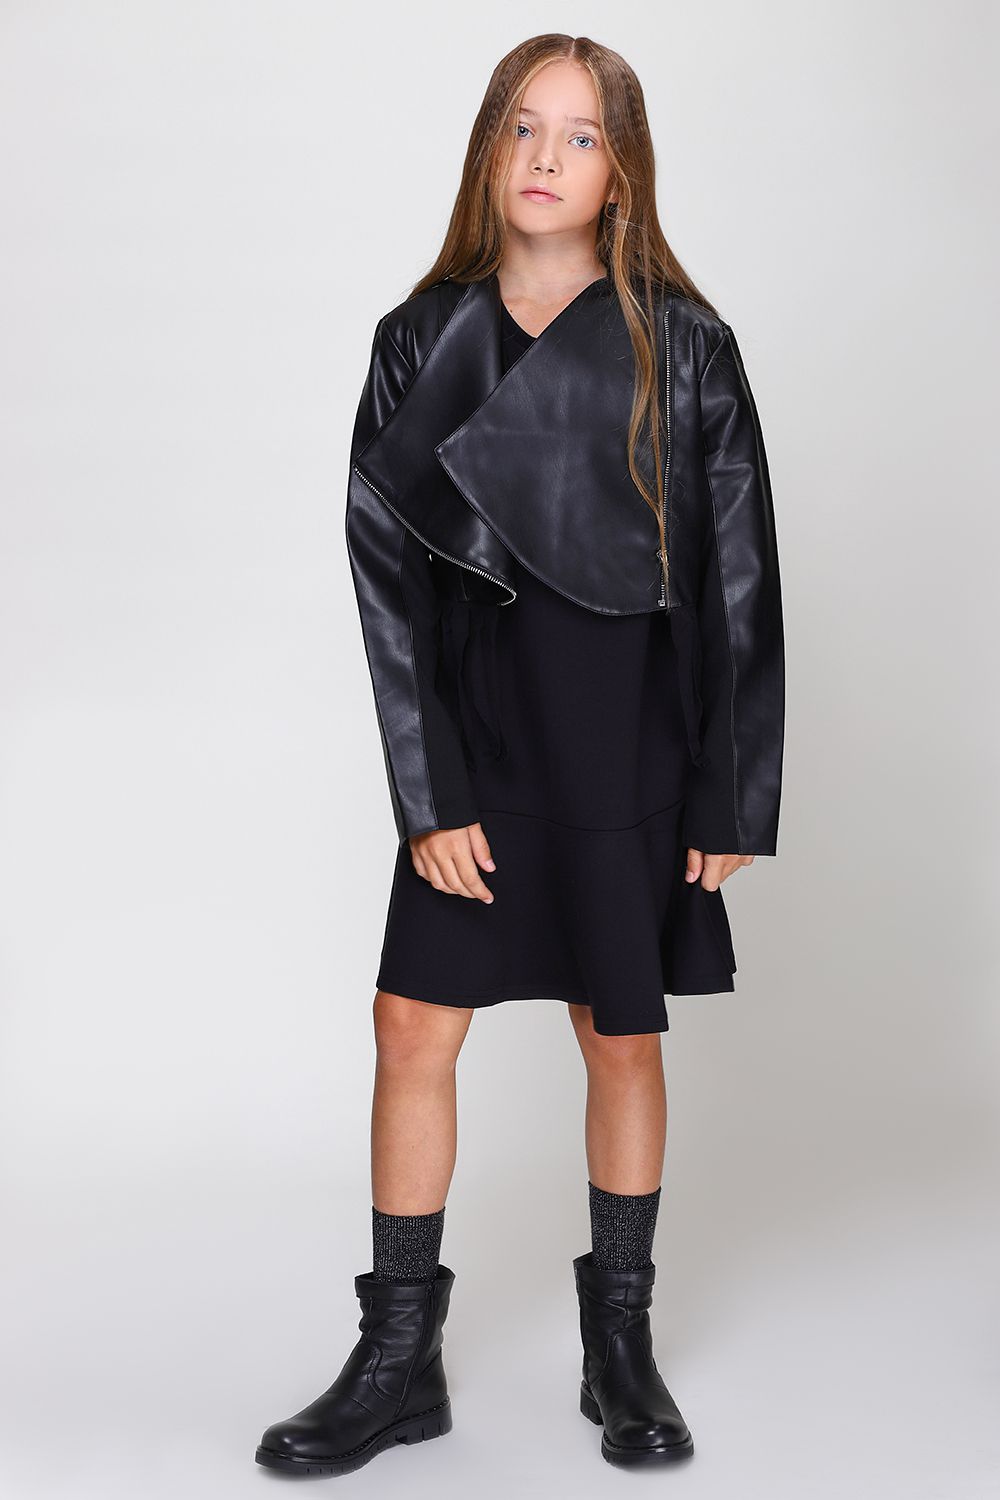 Куртка Y-clu', размер 140, цвет черный Y12160 - фото 3